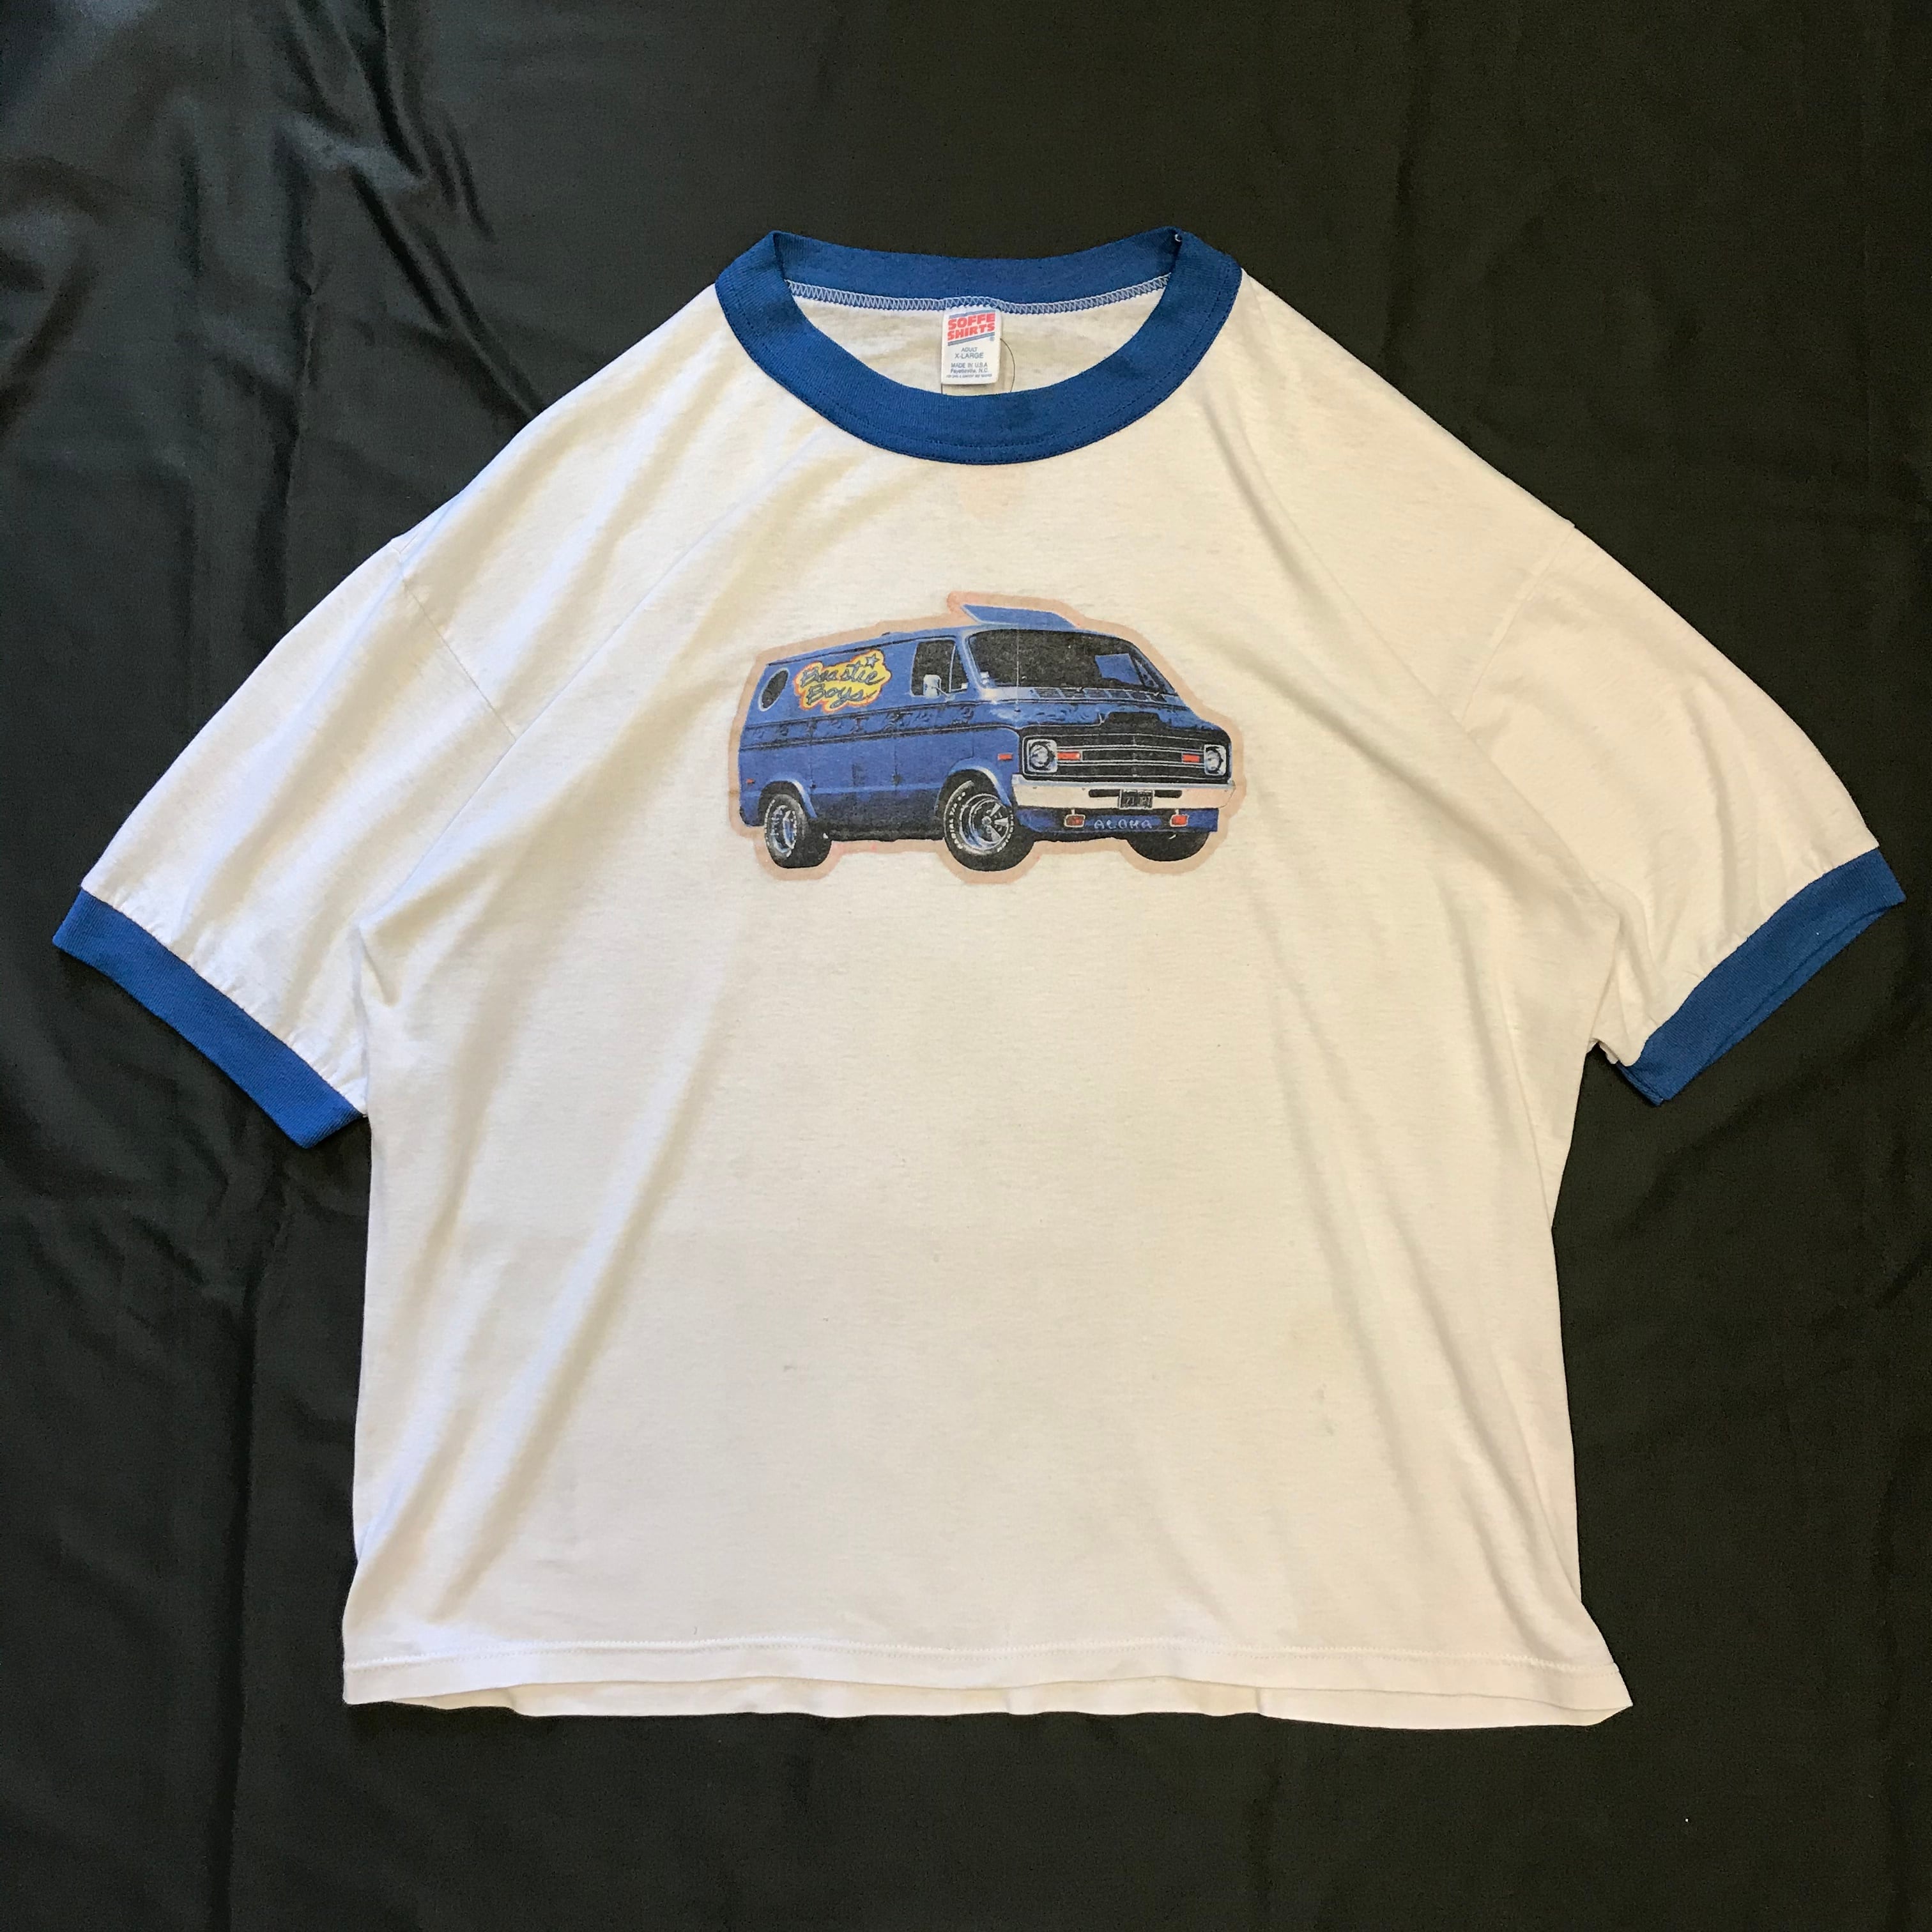 90's Beastie Boys “ALOHA MR. HAND” Ringer neck T-shirt made in